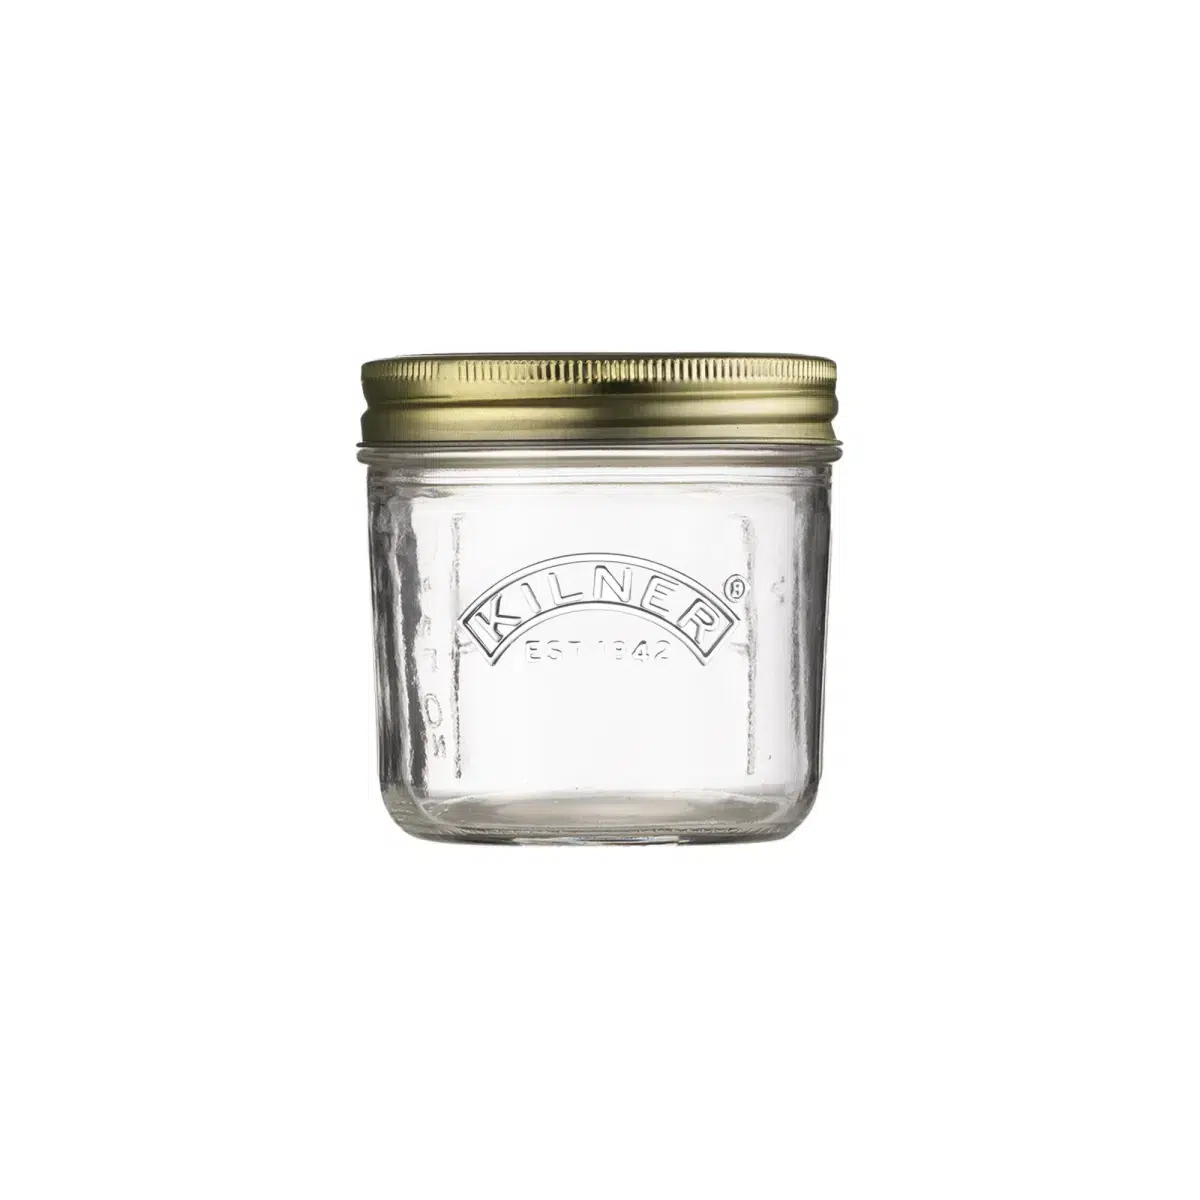 Ein durchsichtiges Kilner-Glasgefäß mit goldenem Schraubdeckel, isoliert auf weißem Hintergrund.